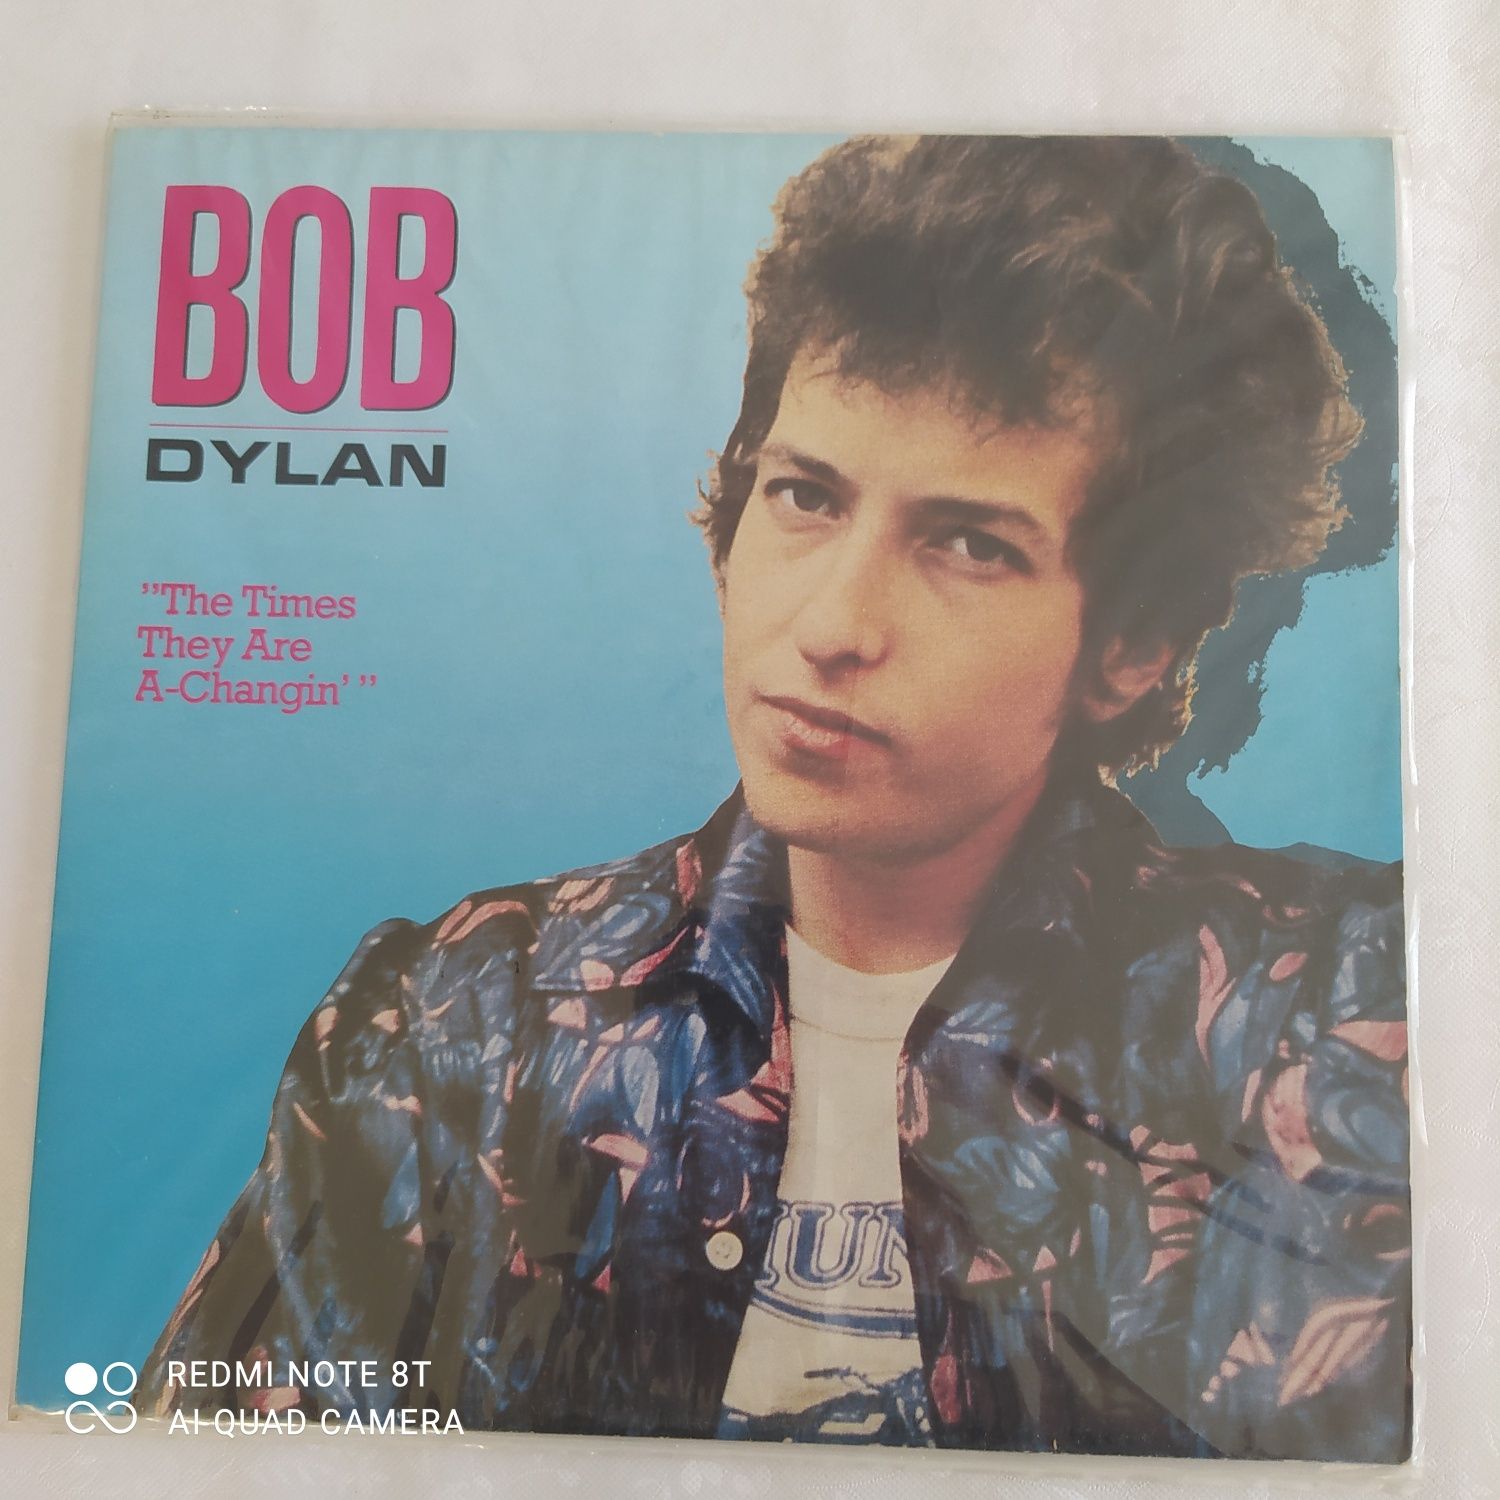 Płyta winylowa Bob Dylan. Wyprzedaż prywatnej kolekcji.